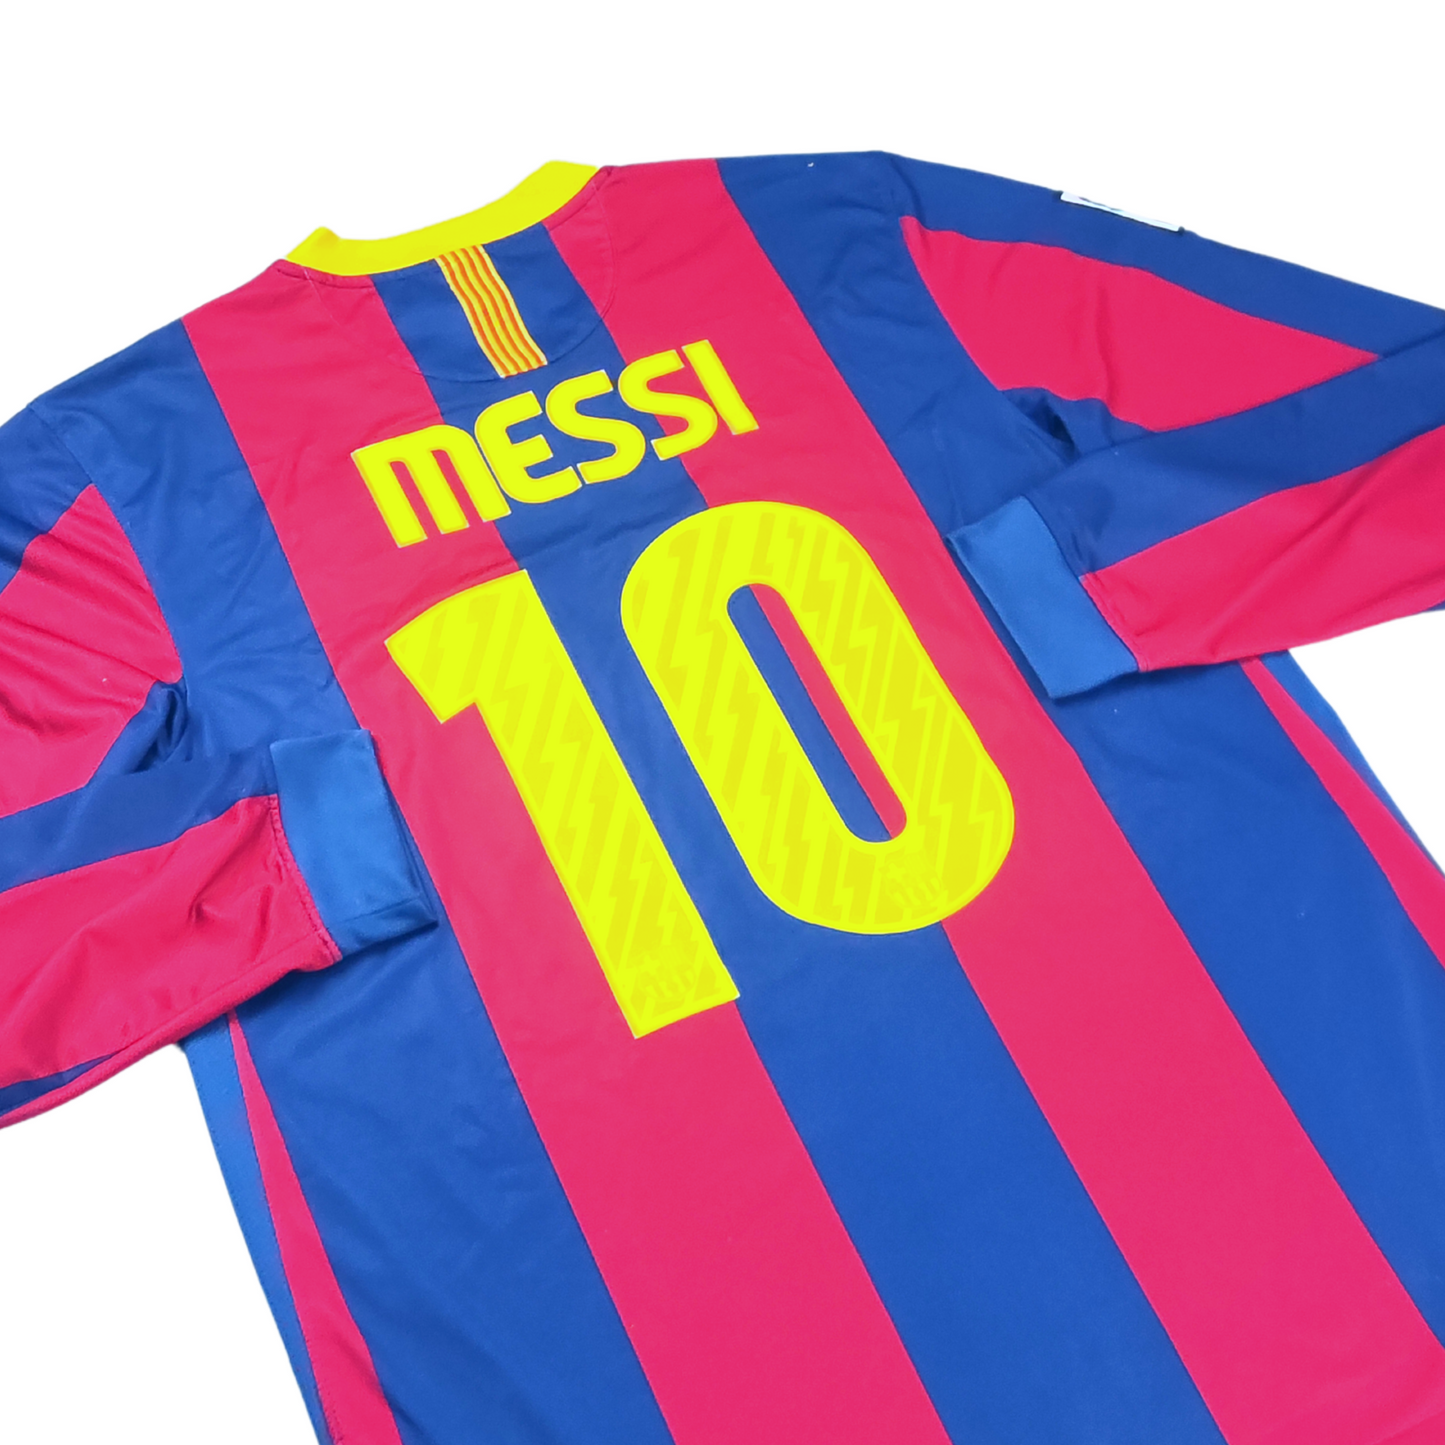 Barcelona Home L/S Shirt 2010-2011 Messi (L)